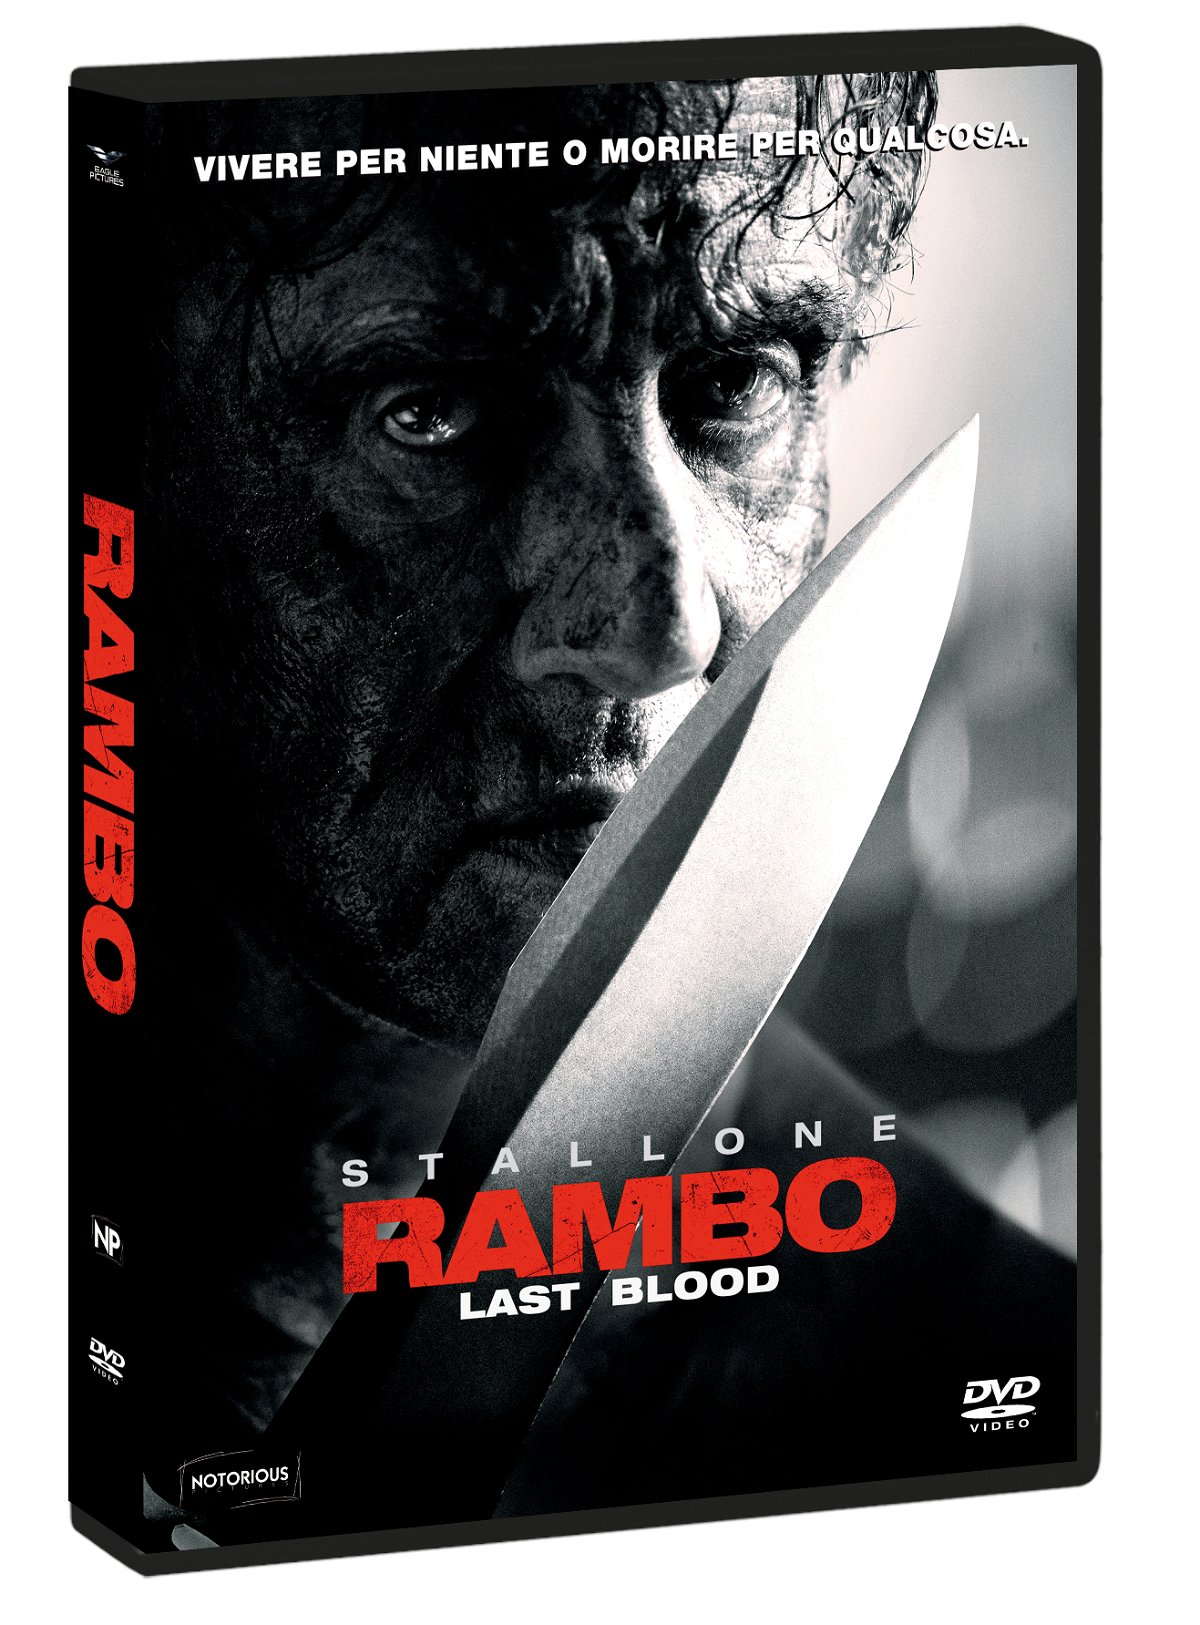 La copertina del DVD di Rambo: Last Blood